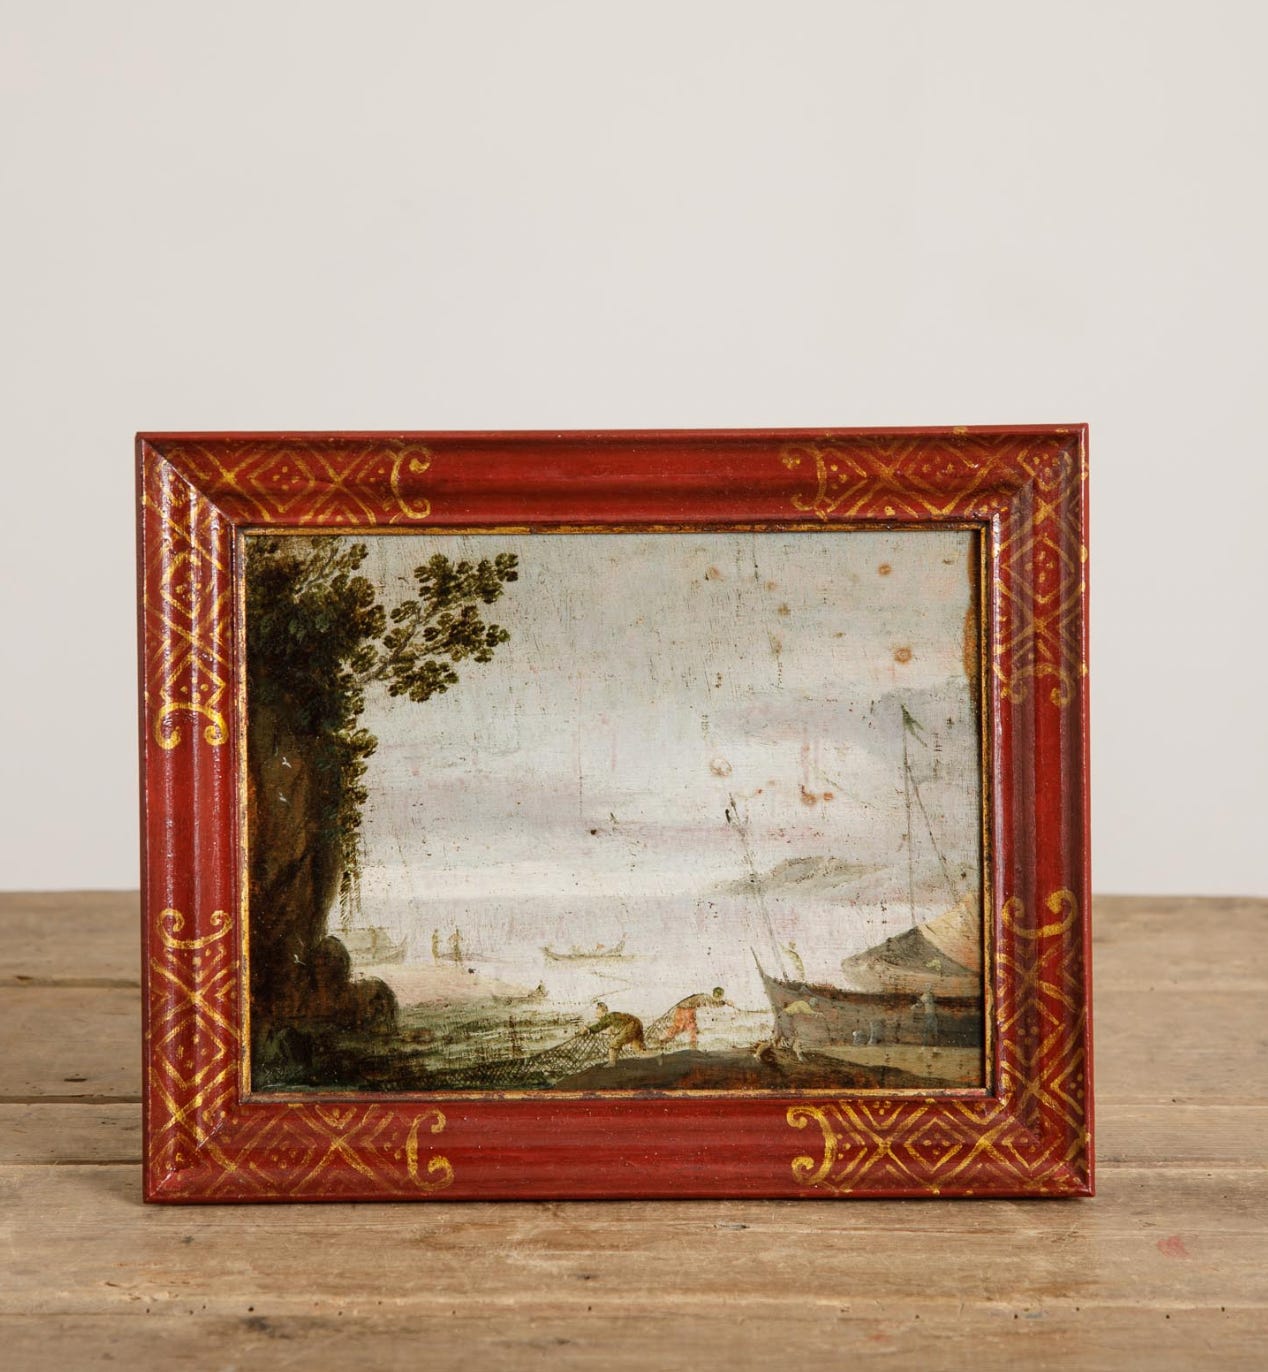 Max Rollitt, Late-18th Century Oil On Panel, Italian School, £980